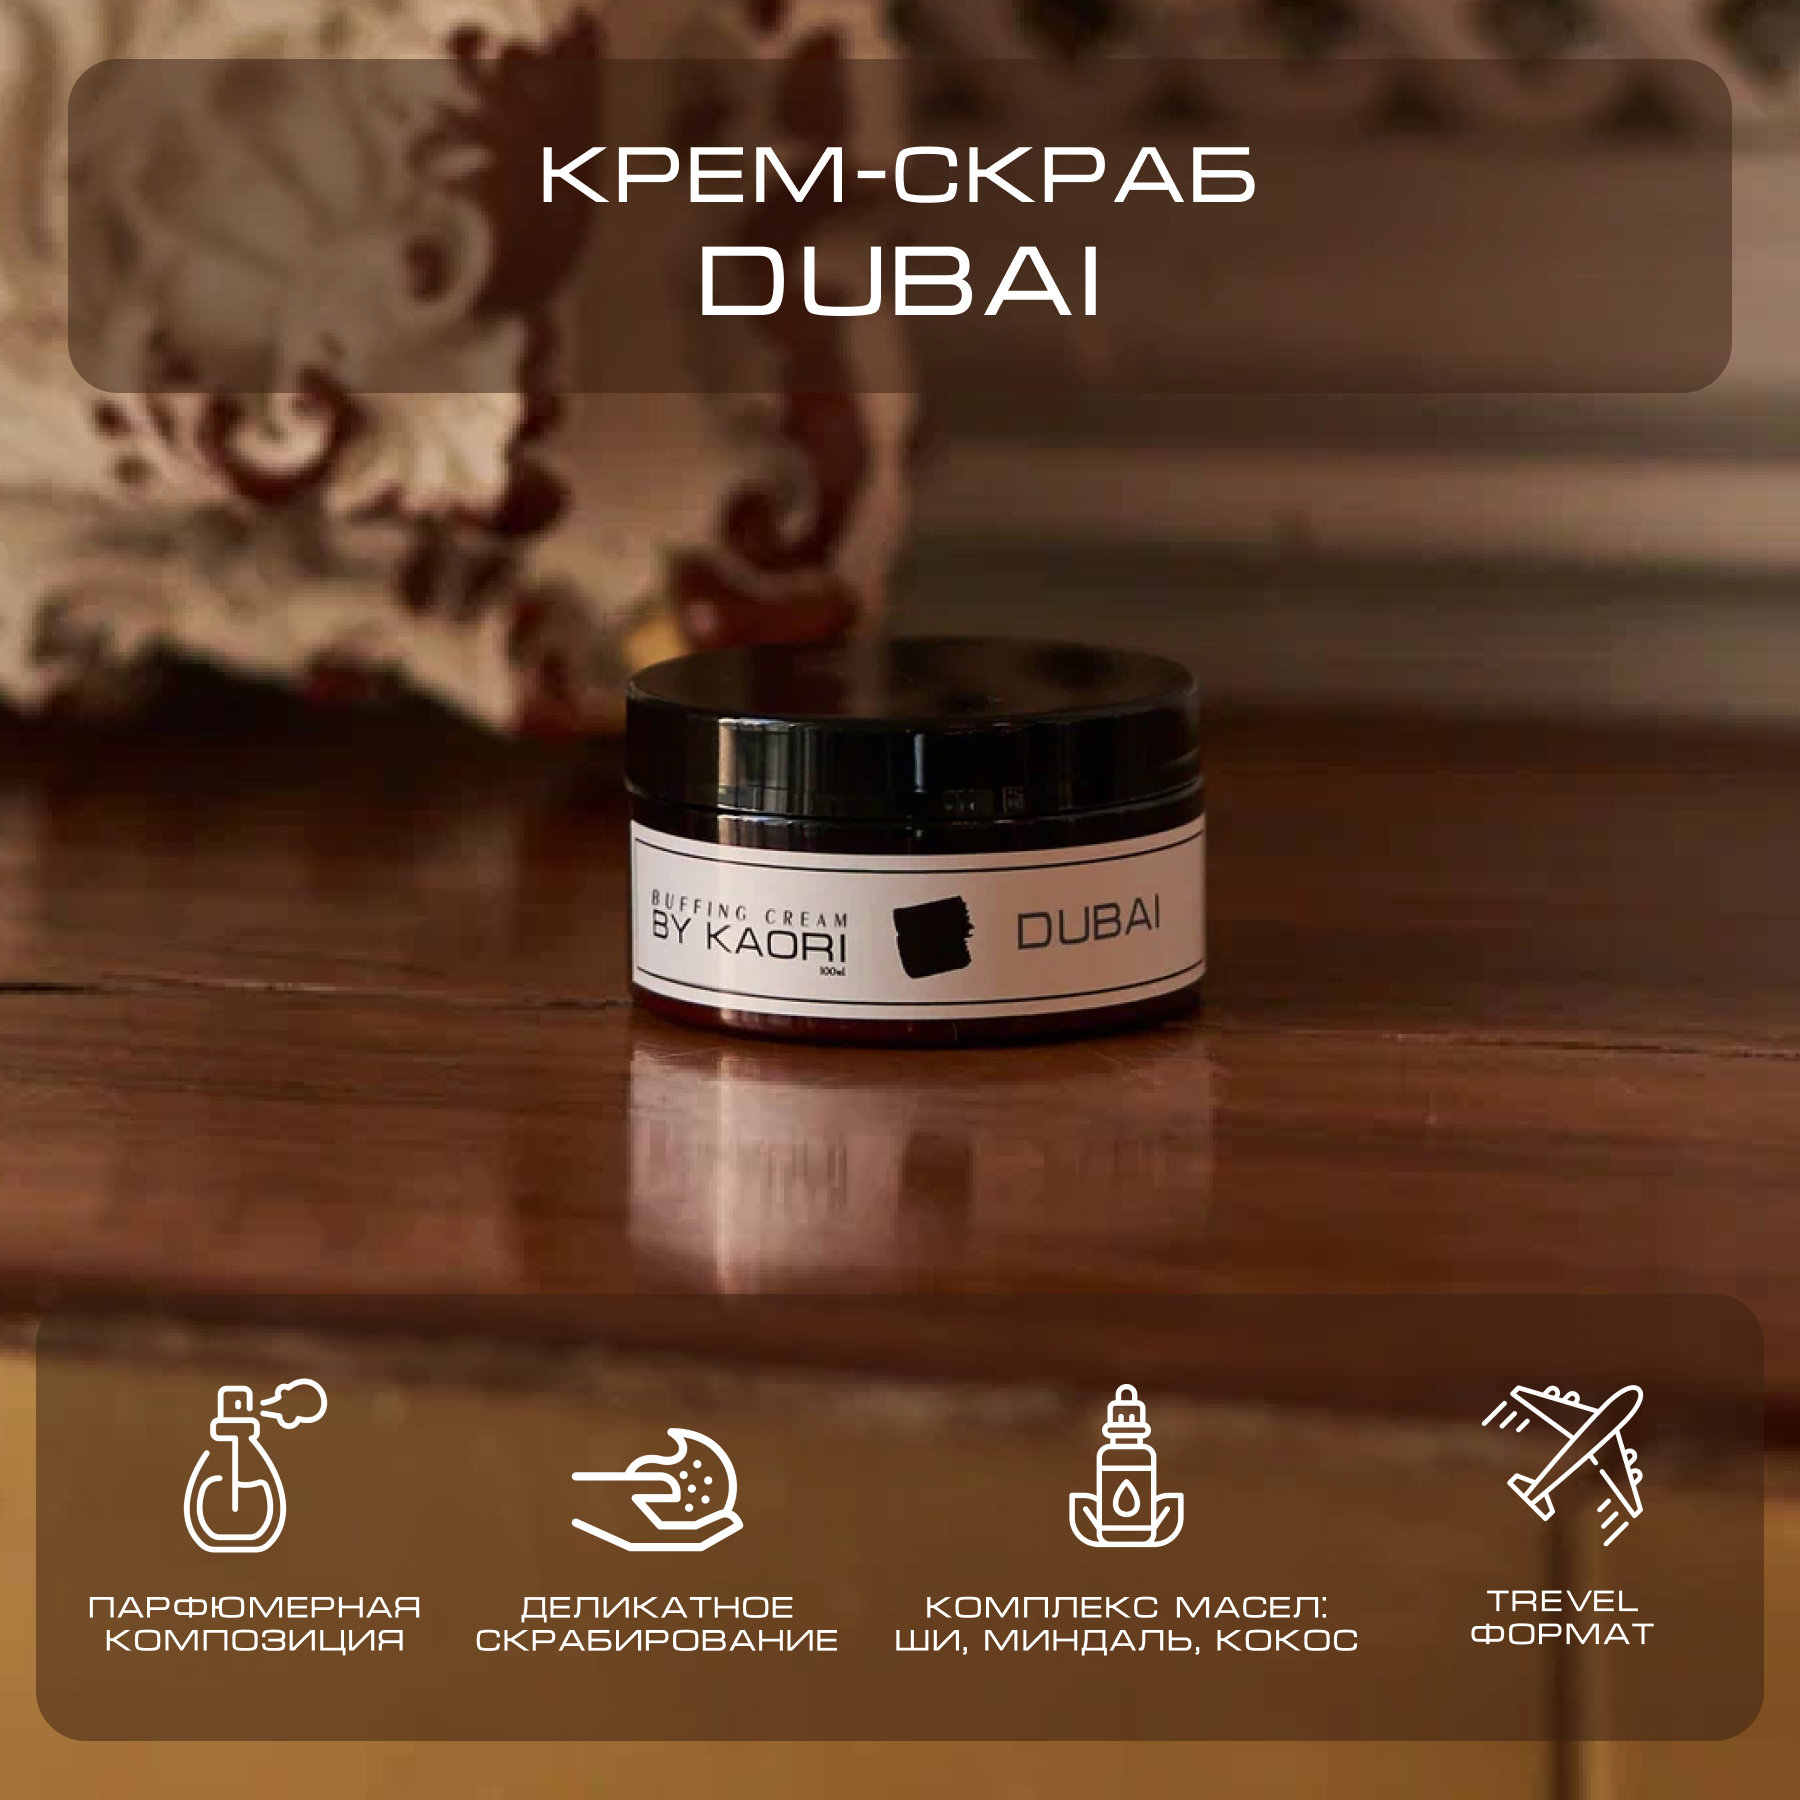 Крем скраб для тела By Kaori парфюмированный тревел-версия Dubai 100 г крем скраб для тела by kaori отшелушивающий парфюмированный тревел версия fleur 100 г